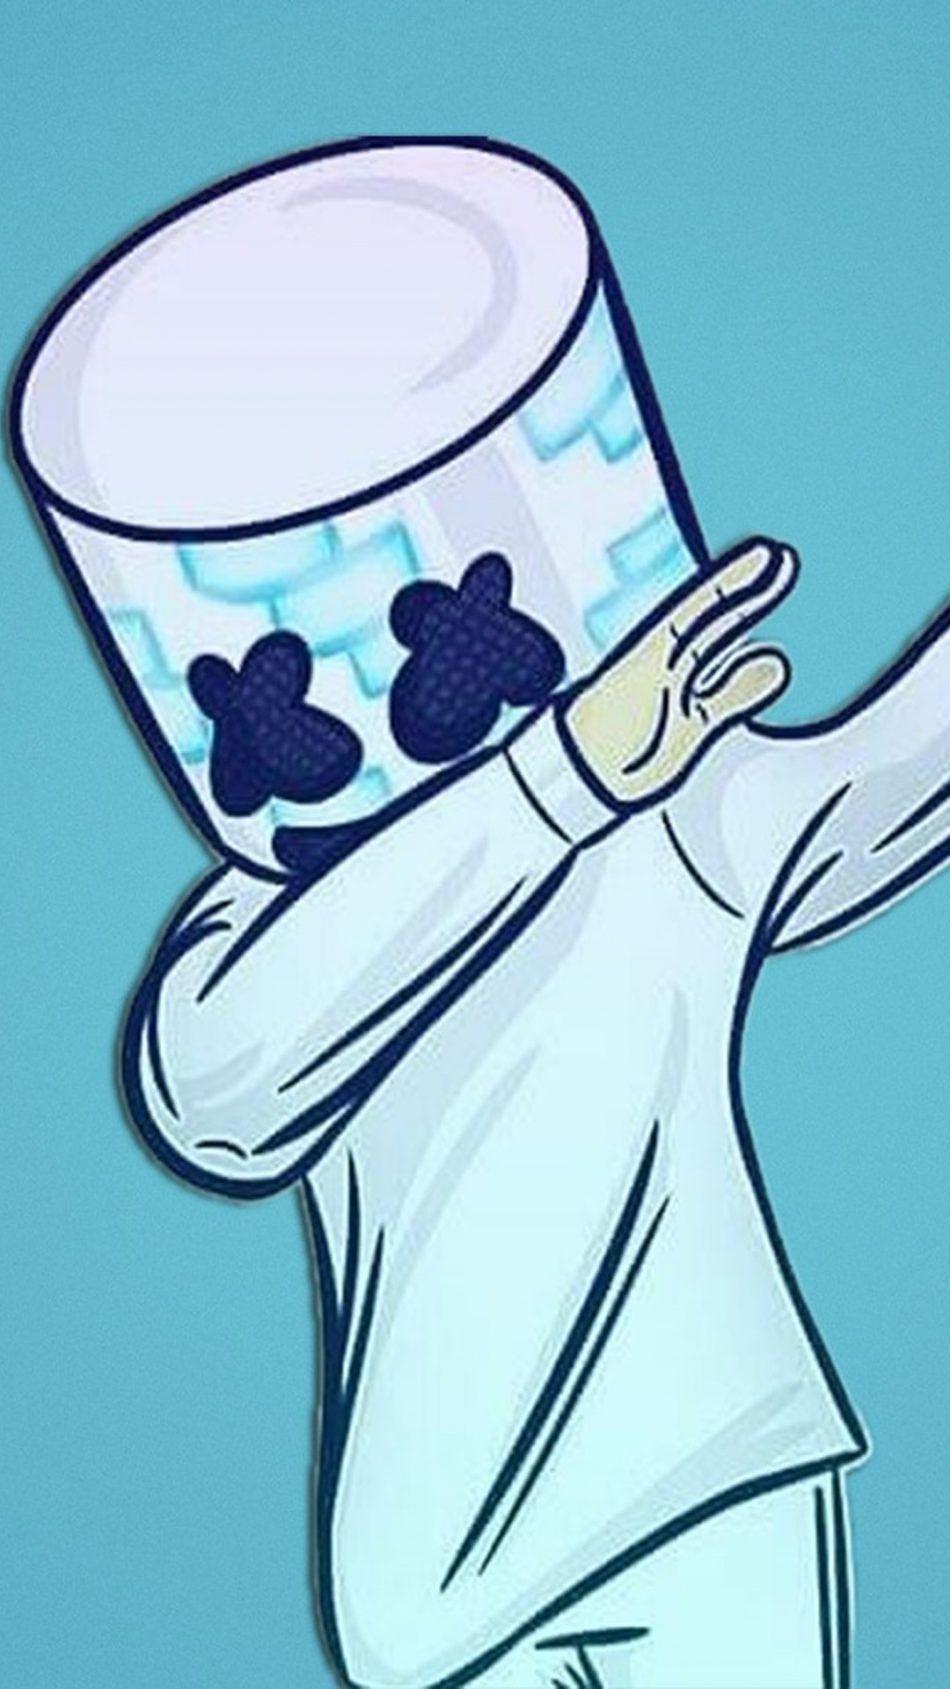 Marshmello Fan Artwork. Mobile wallpaper, Gaming wallpaper